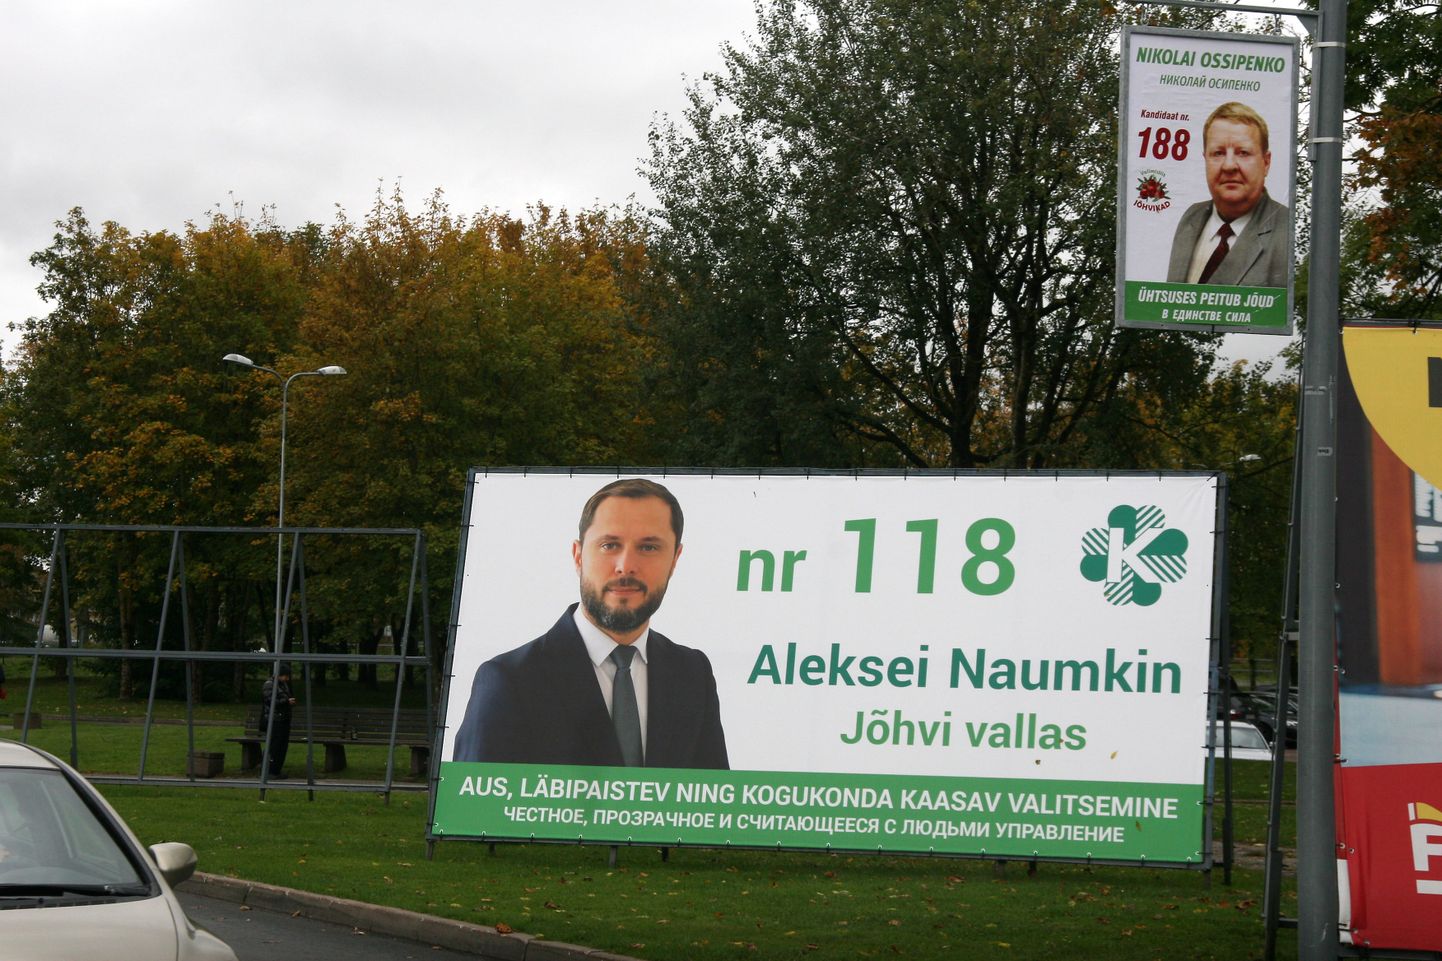 Алексей Наумкин, ранее представлявший избирательный союз Николая Осипенко, баллотировался на этих муниципальных выборах в списке Центристской партии.